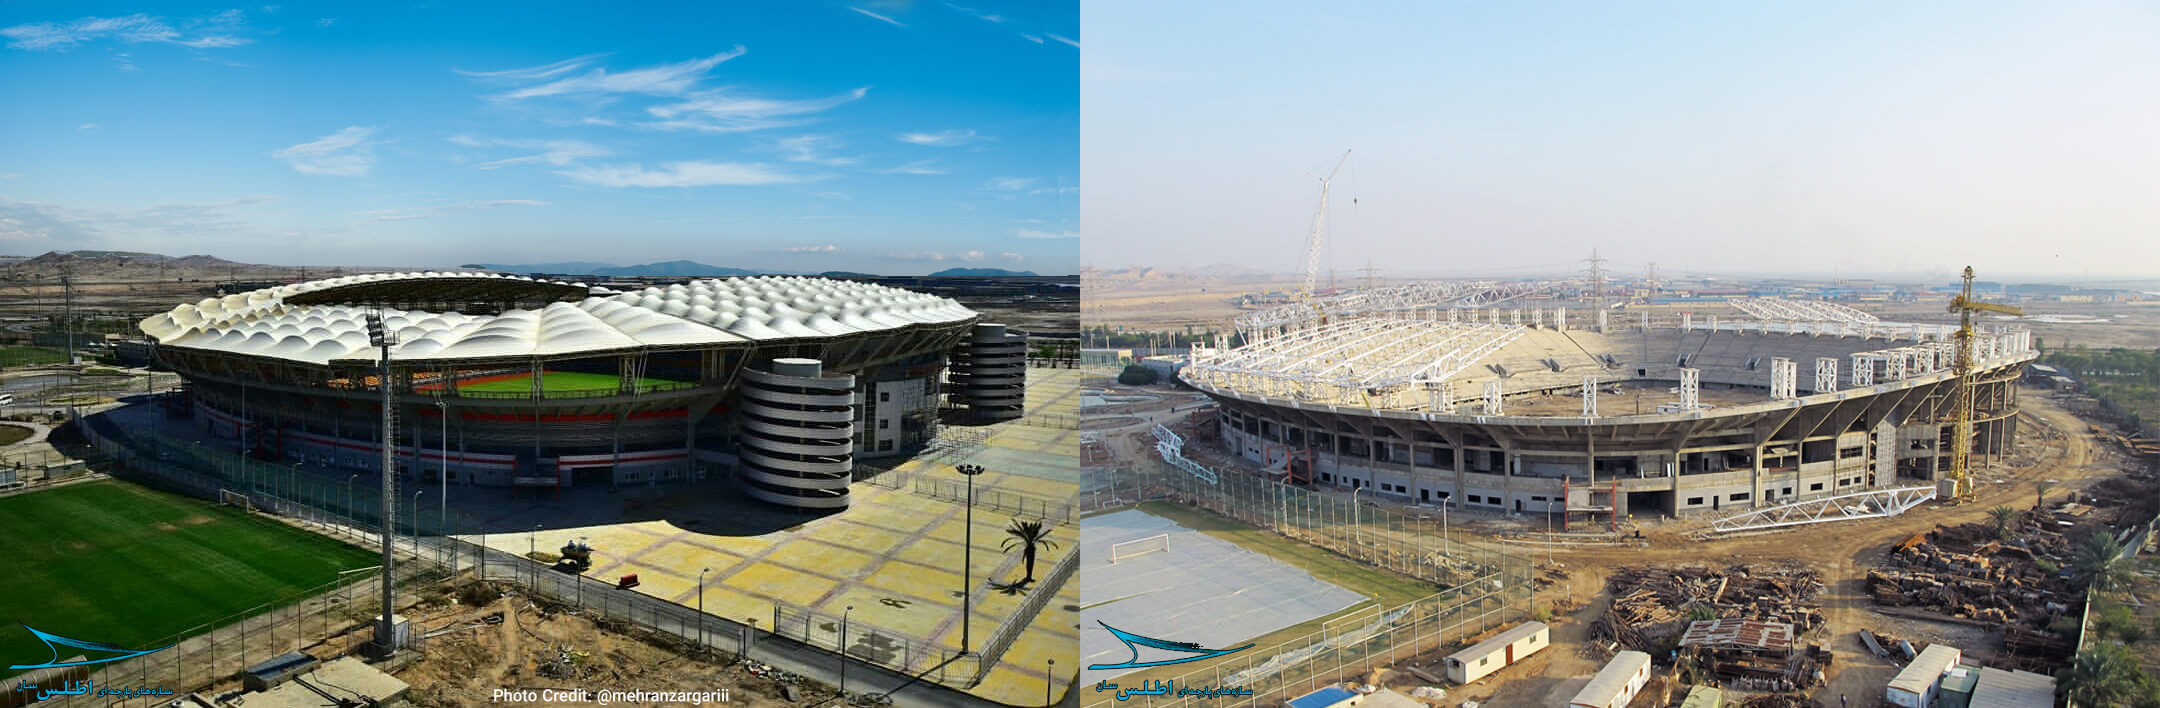 فولاد آرنا قبل و بعد از اجرای سقف پارچه ای چشم نوازش